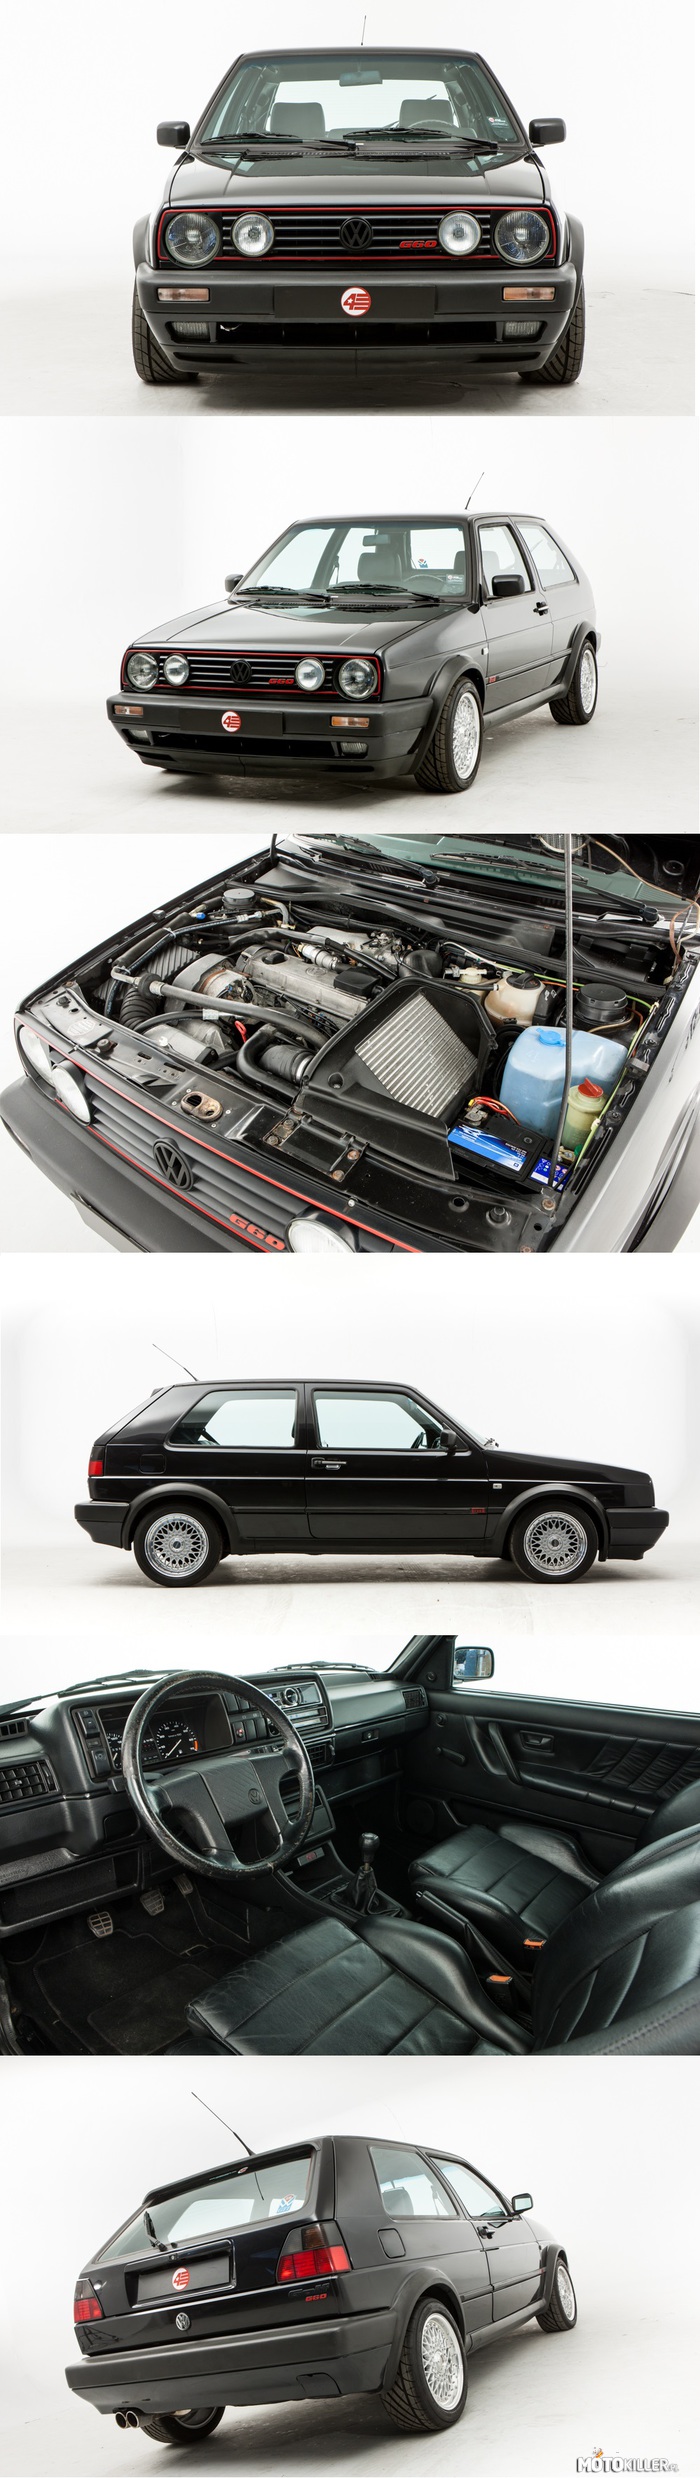 Volkswagen Golf II G60 – 1991 rok, silnik 1.8L z kompresorem o mocy 160 KM. 